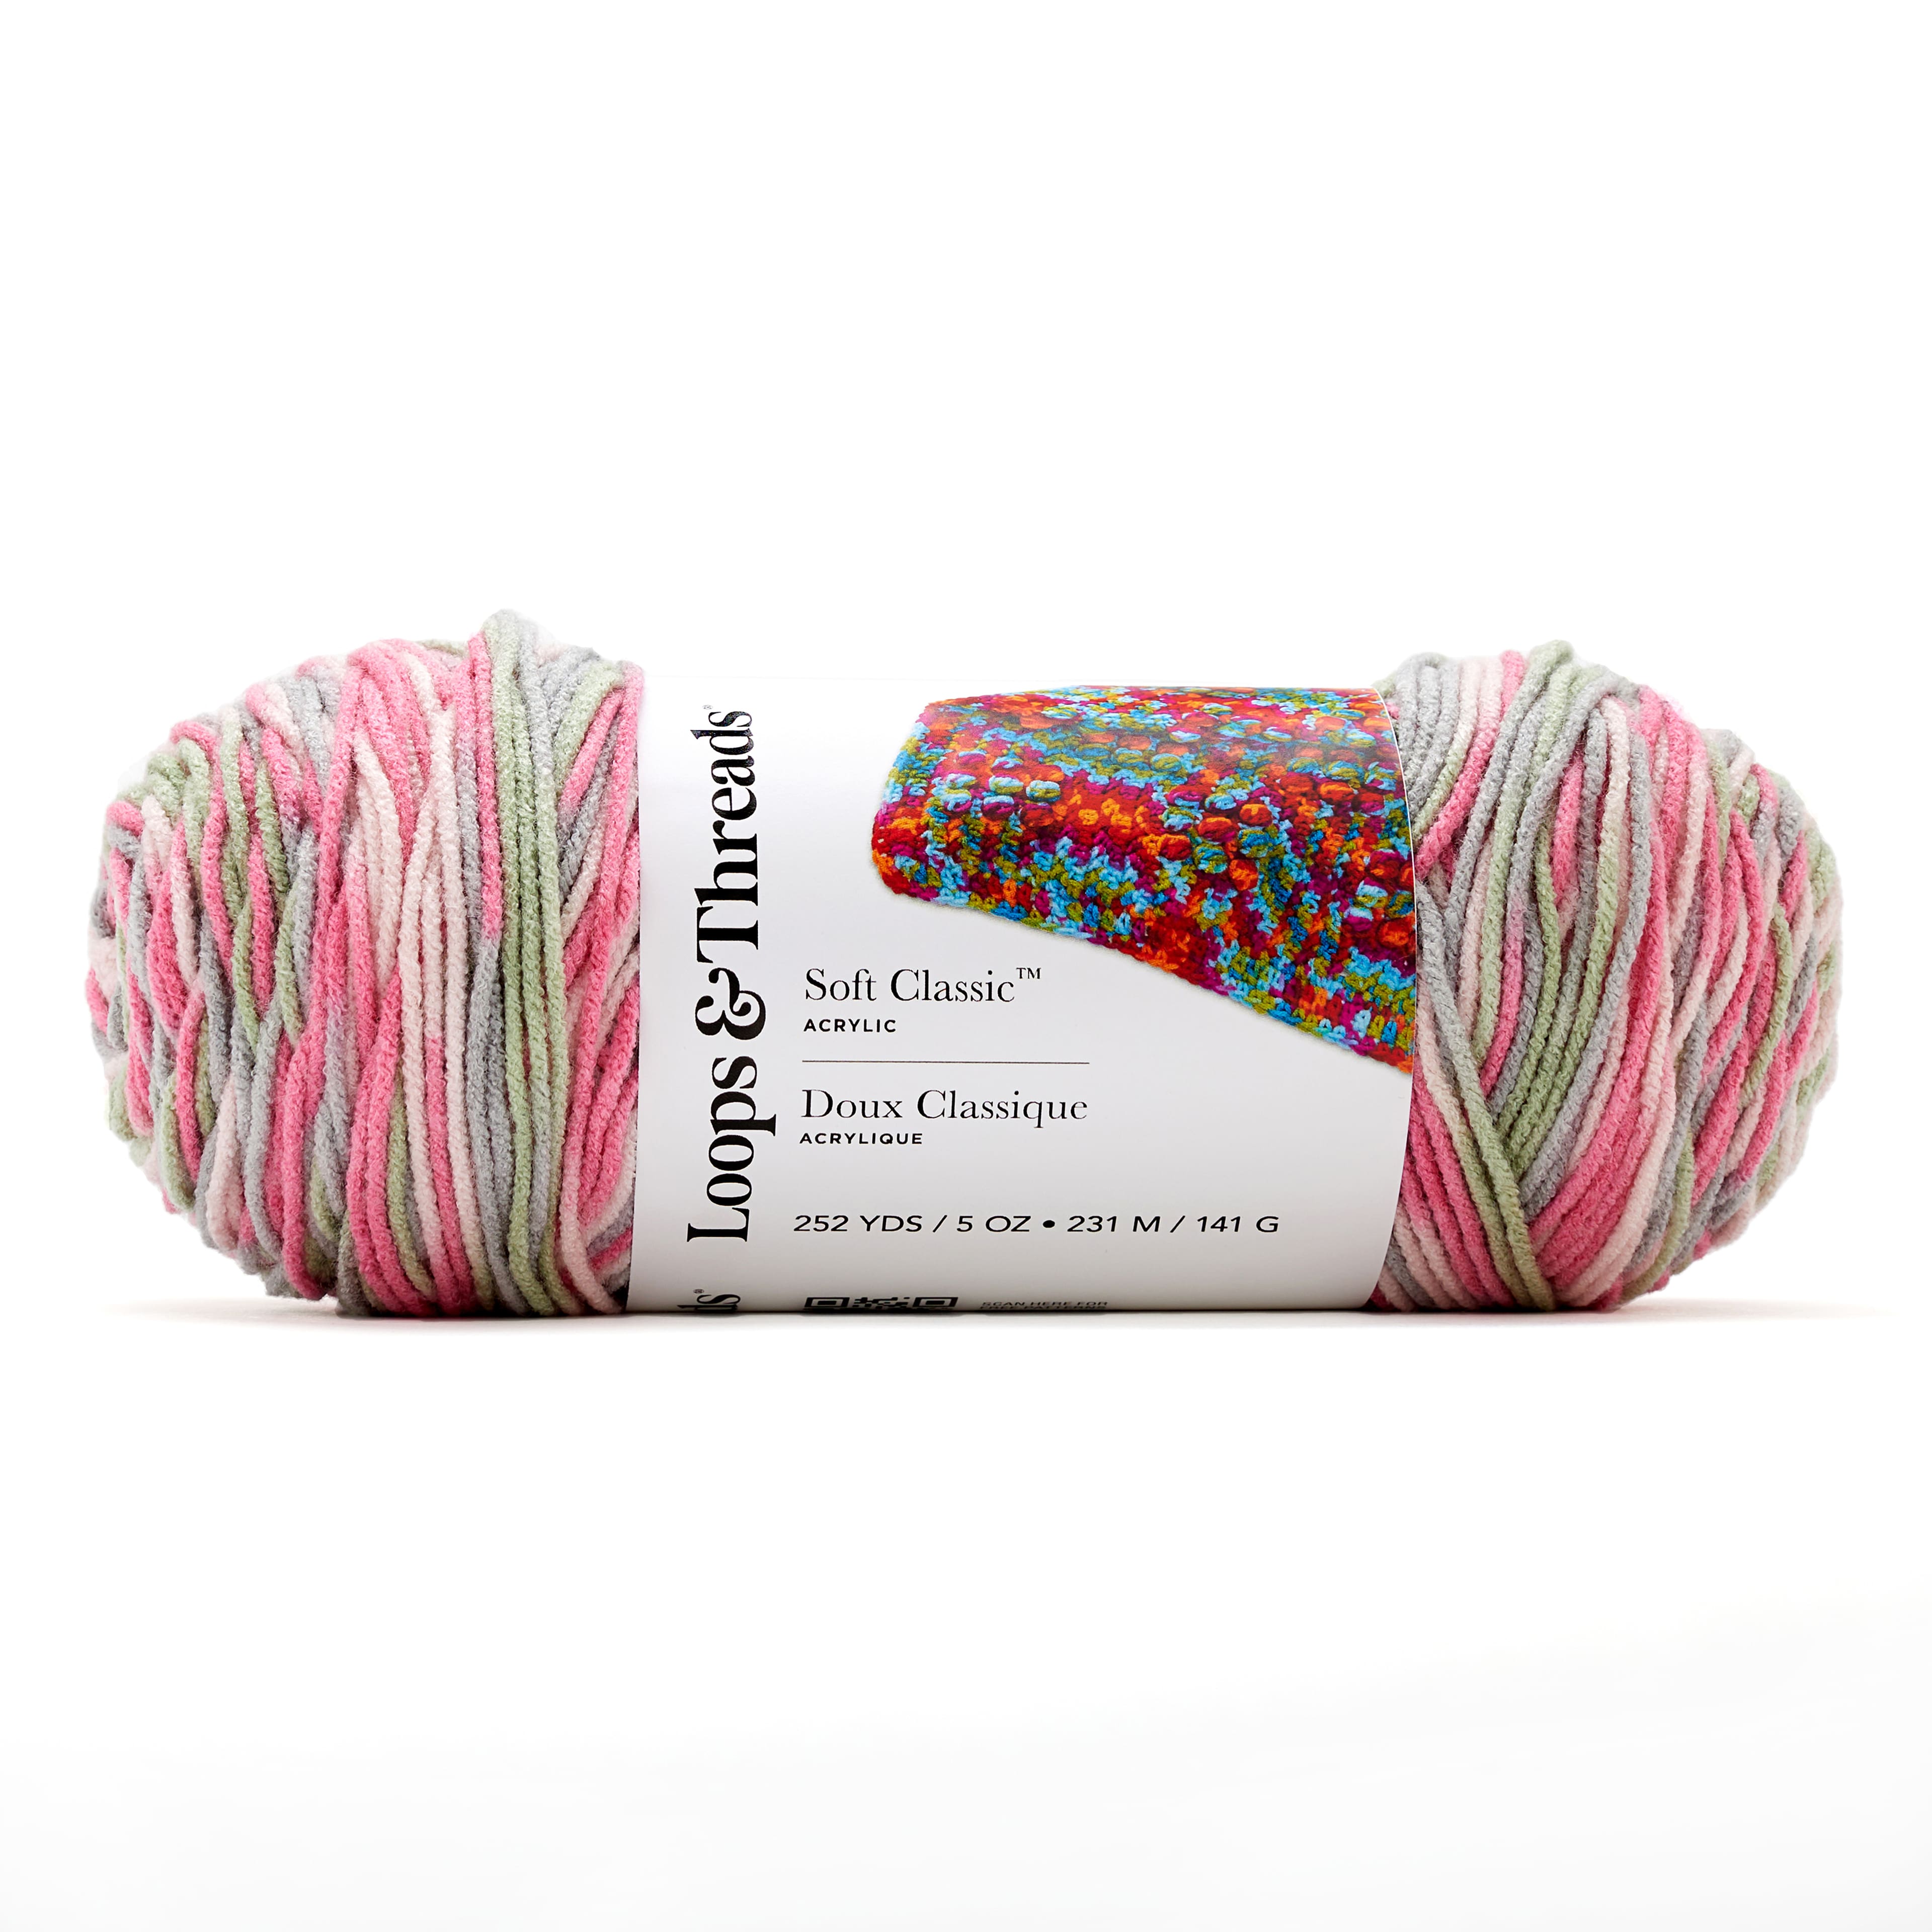 Lion Brand Knitting Yarn Comfy Cotton Blend Flower Garden 3-Skein